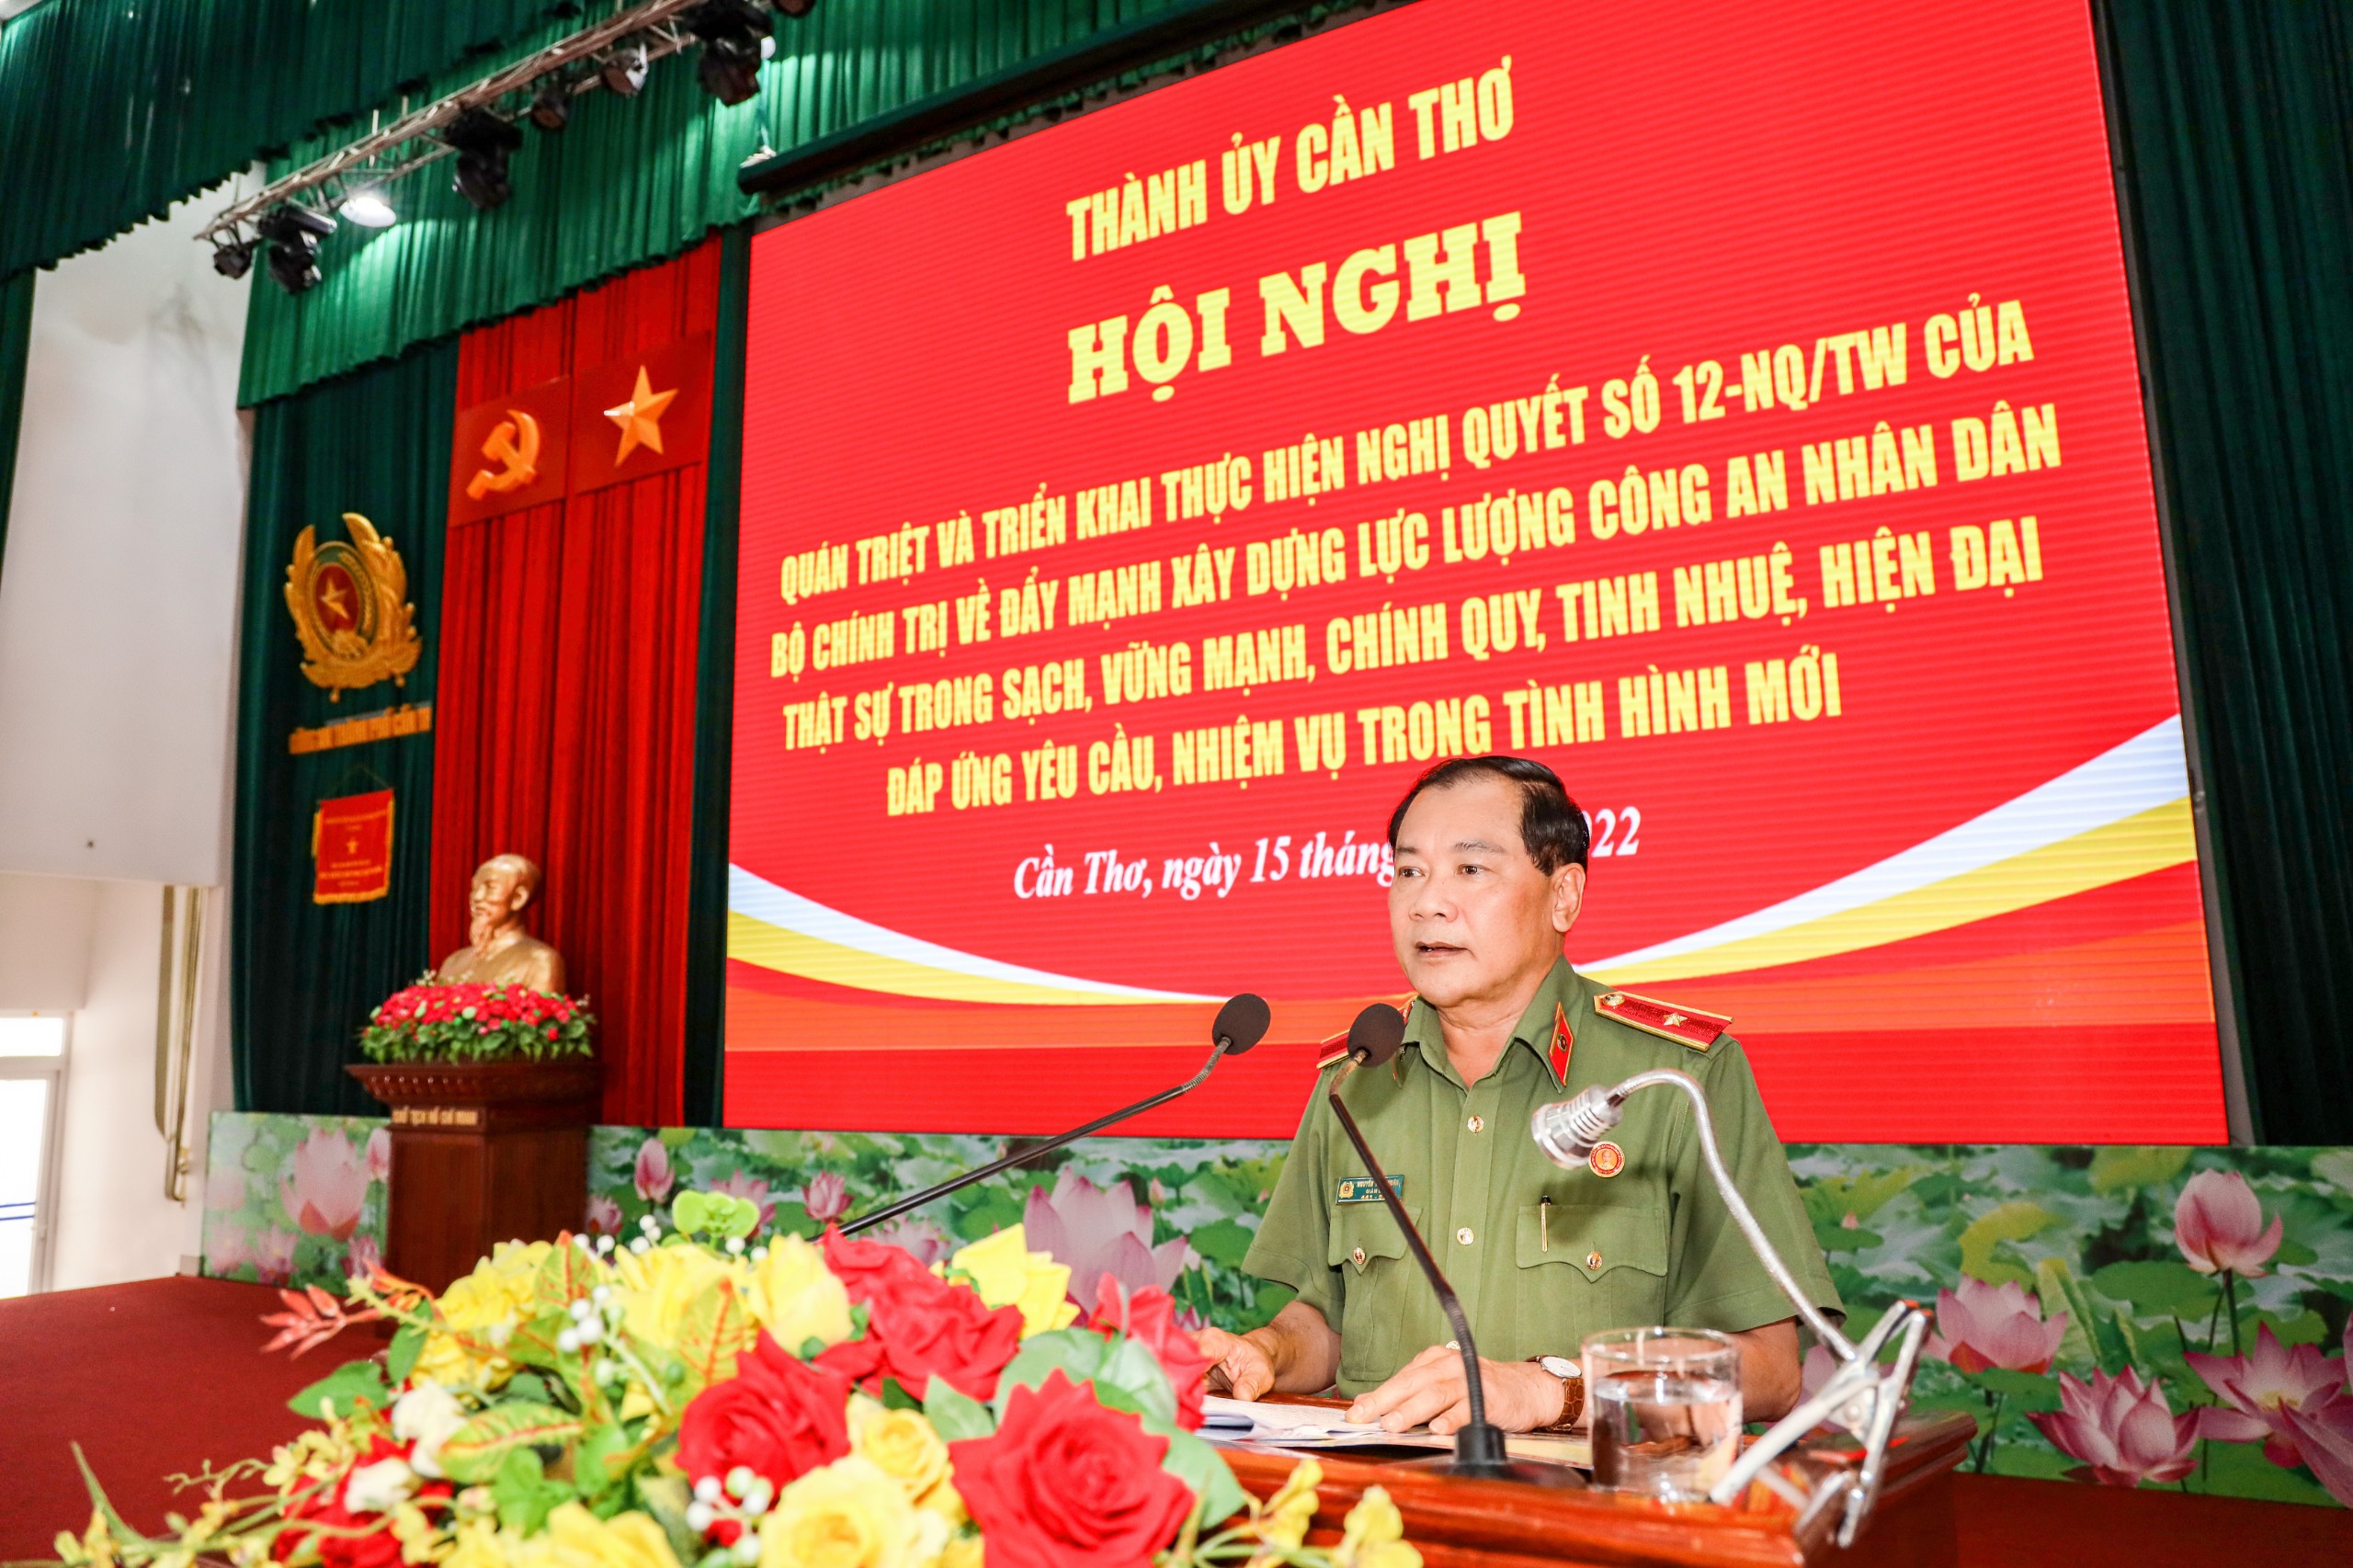 Thiếu tướng Nguyễn Văn Thuận - UV BTV Thành ủy, Bí thư Đảng ủy, Giám đốc Công an TP. Cần Thơ phát biểu kết luận Hội nghị.